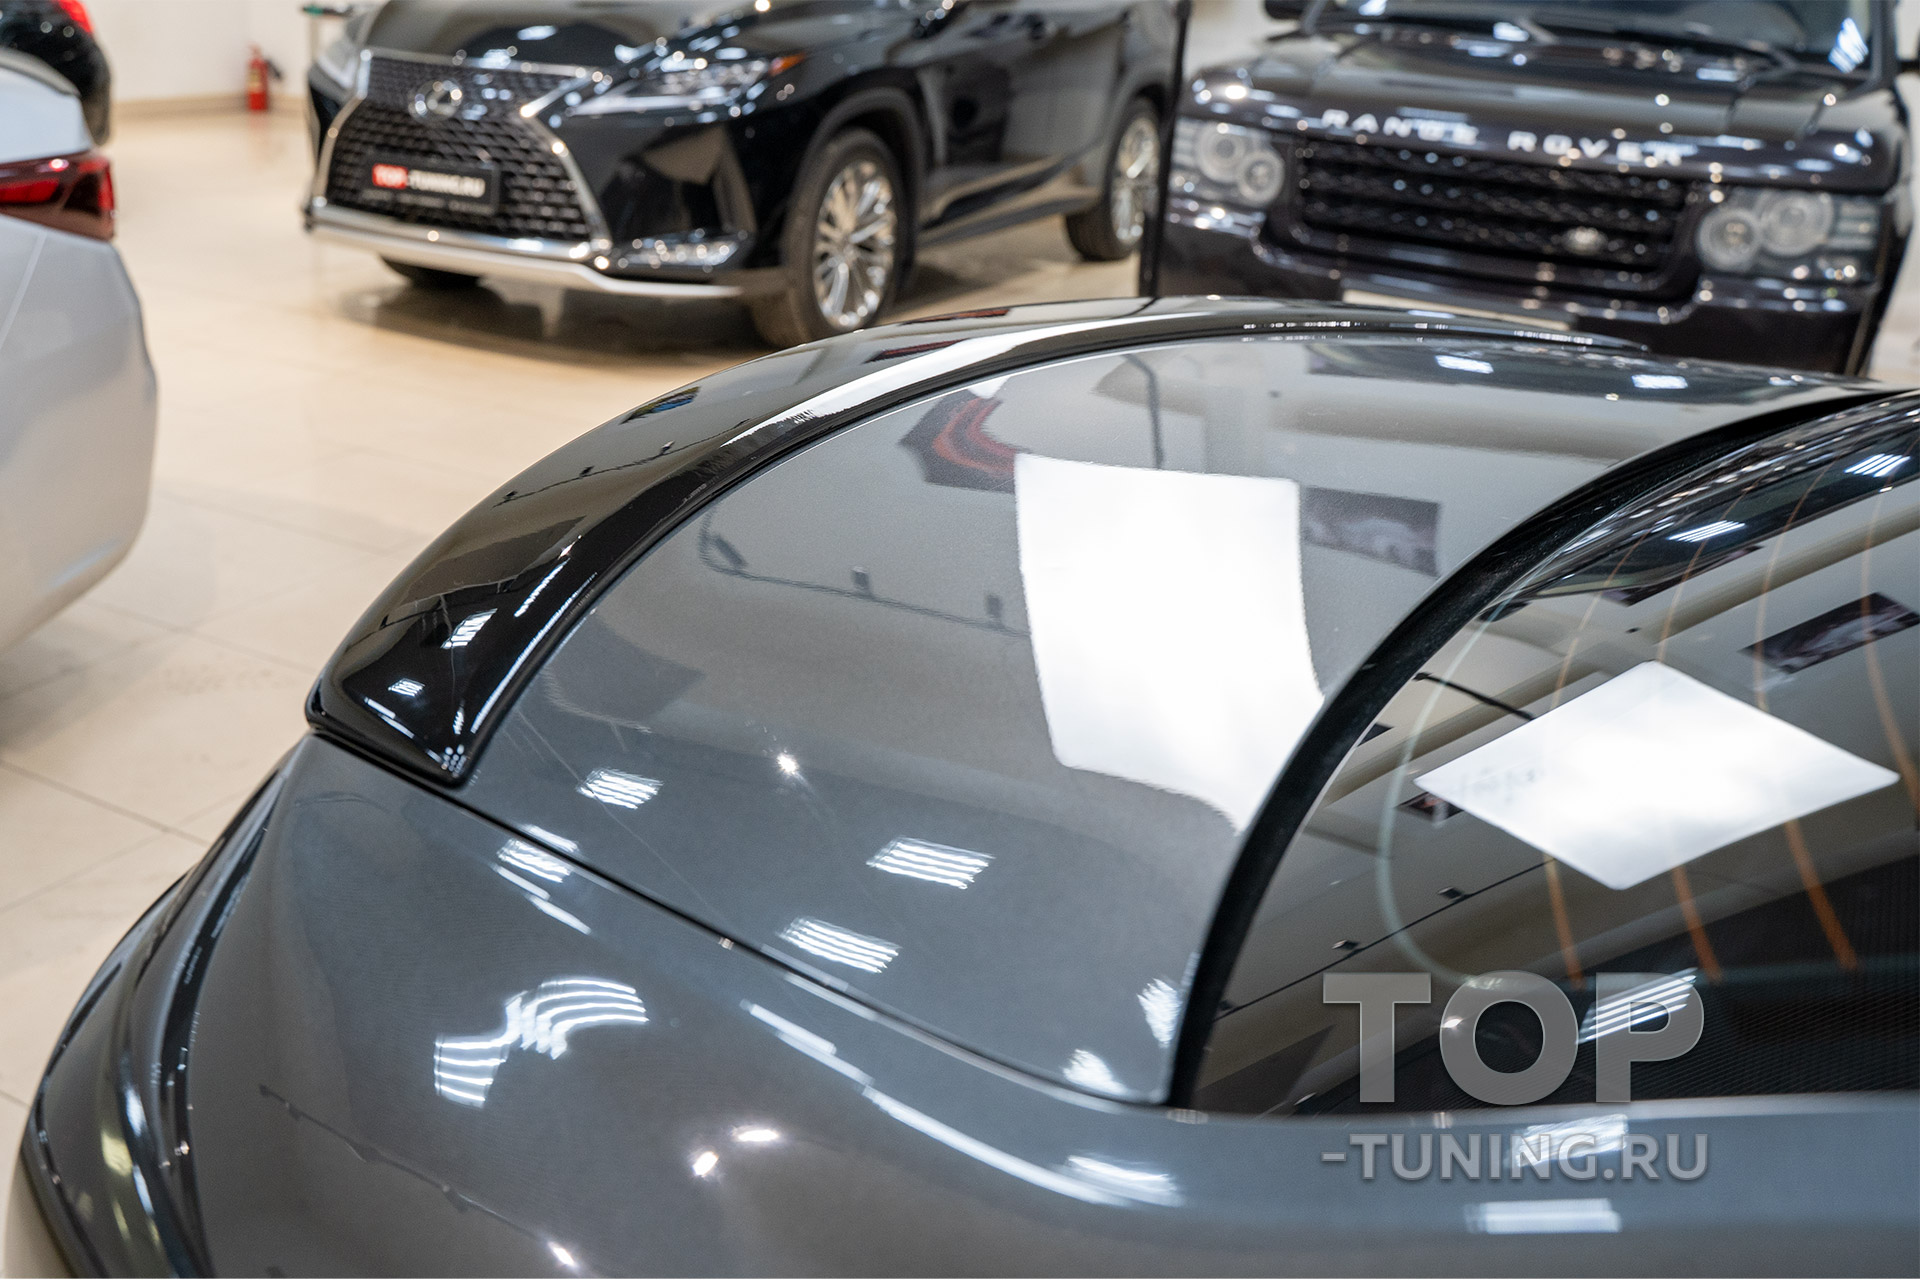 Модернизация внешнего вида Mazda 6 GH седан (серого цвета). Установка спойлера в Топ Тюнинг Москва